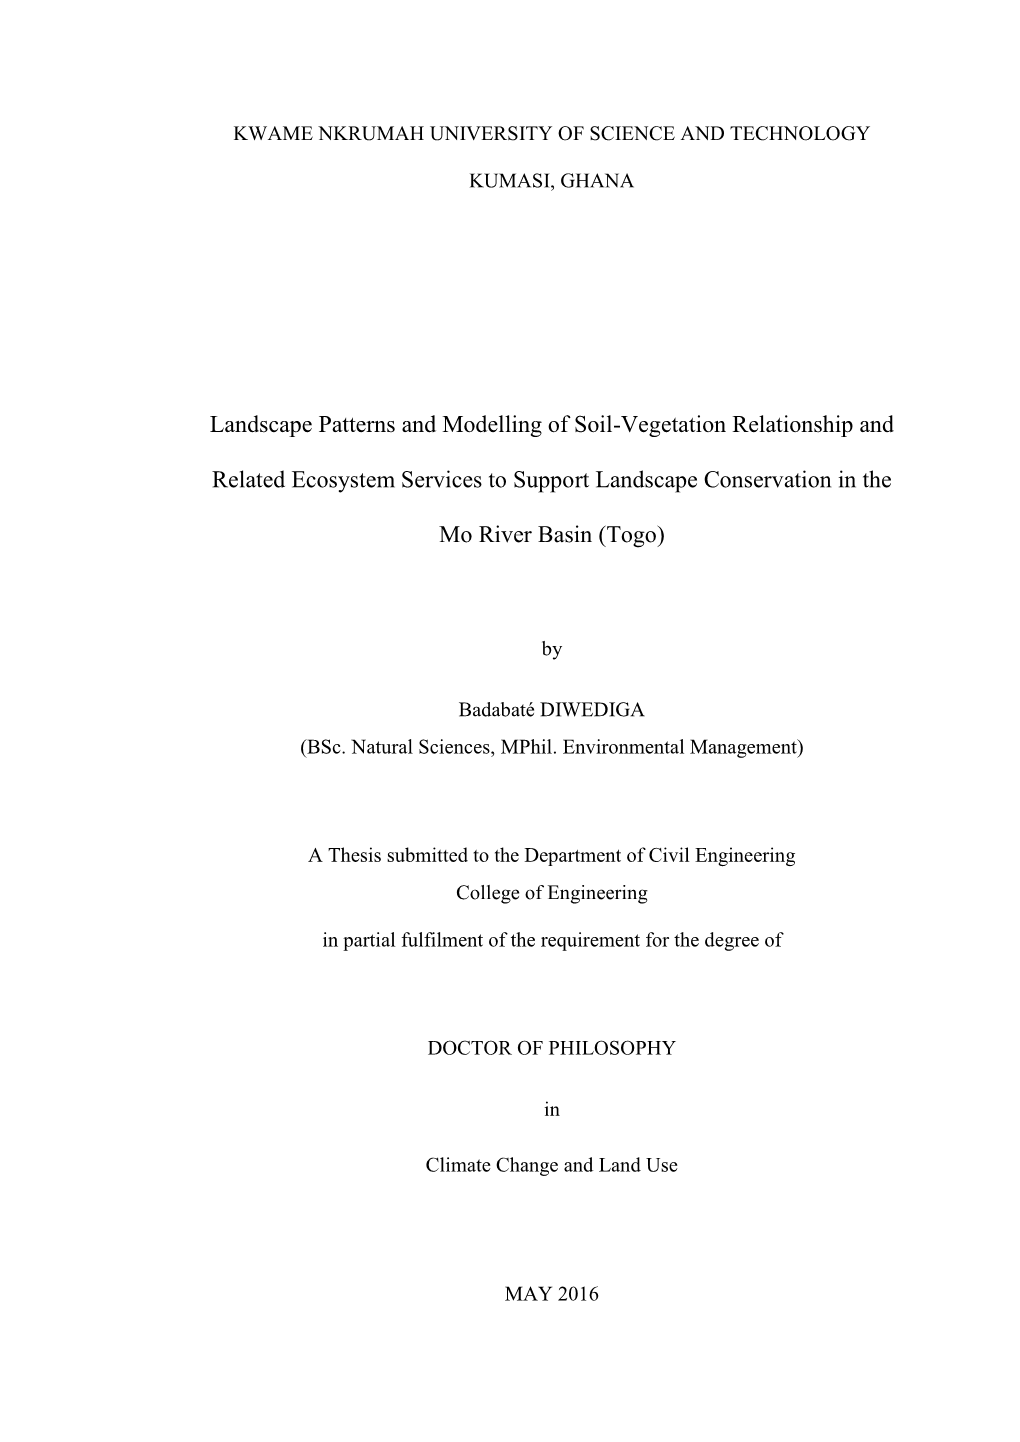 Landscape Patterns and Modelling of Soil-Vegetation Relationship And